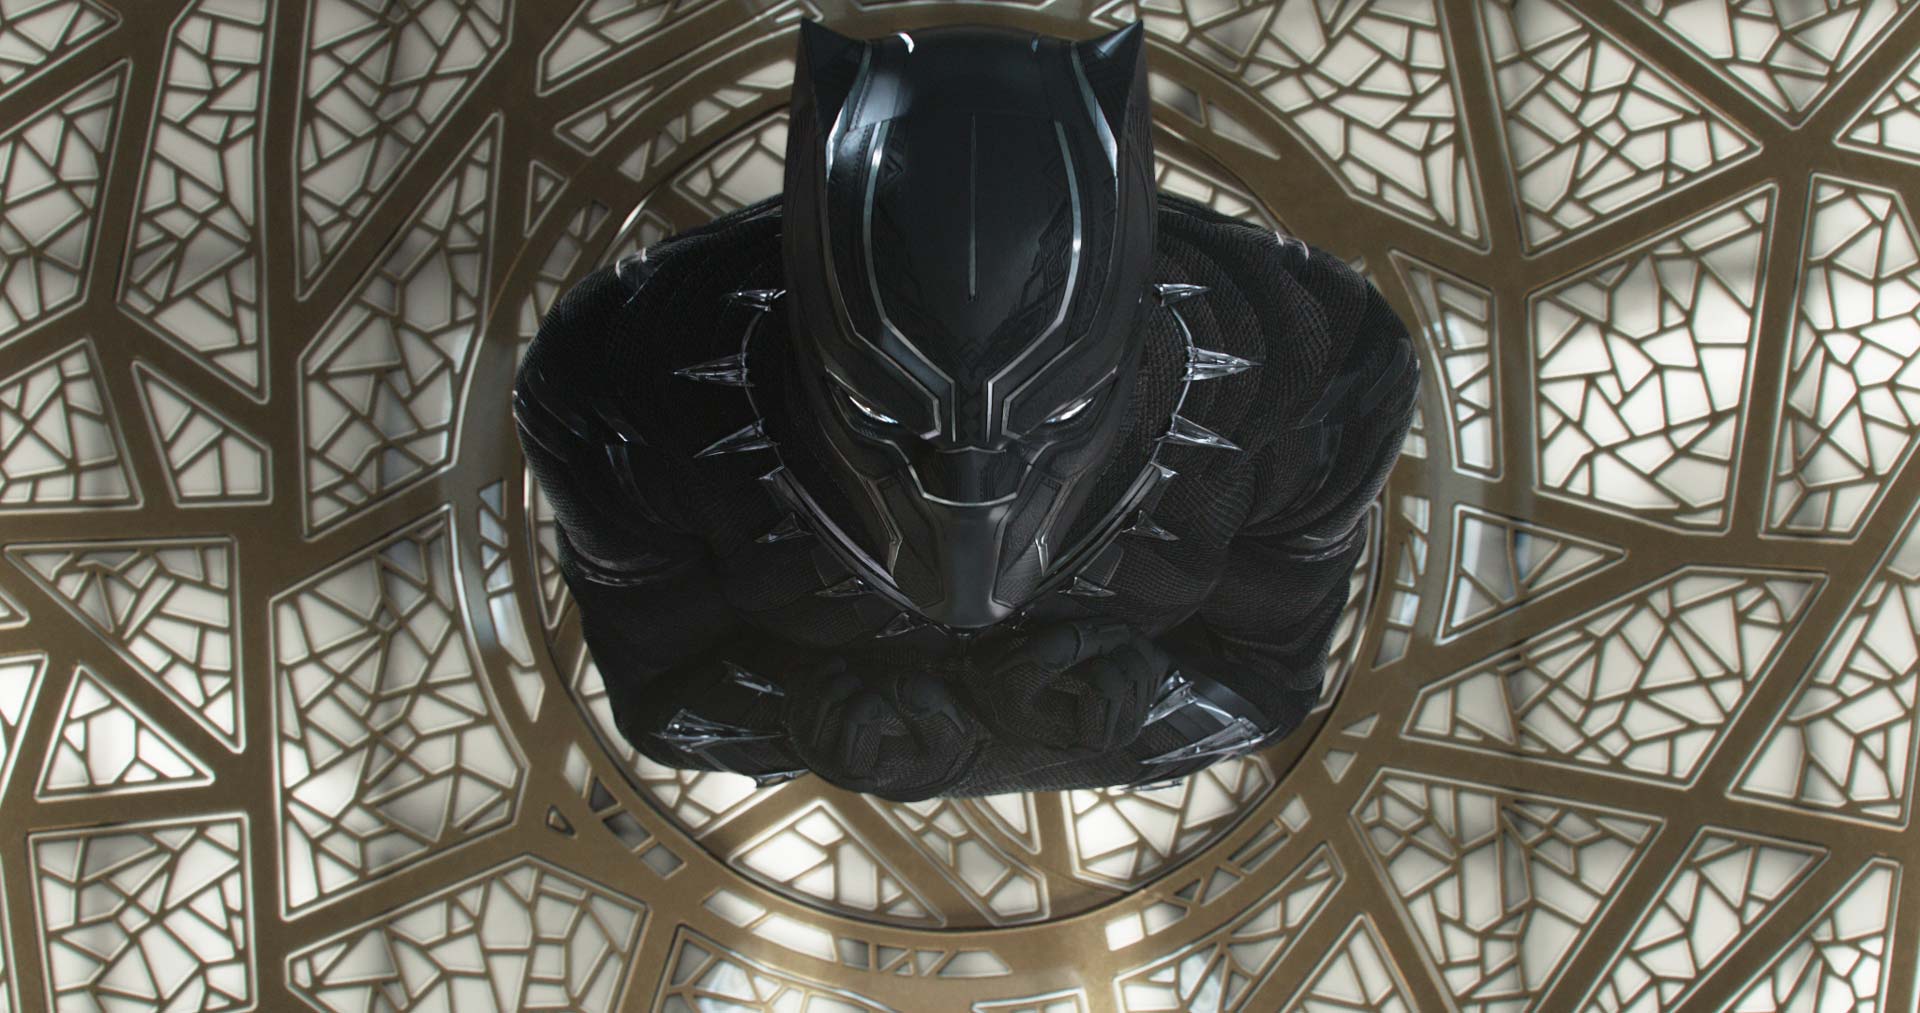 Película “Black Panther”: superhéroe de molde | Crítica de cine